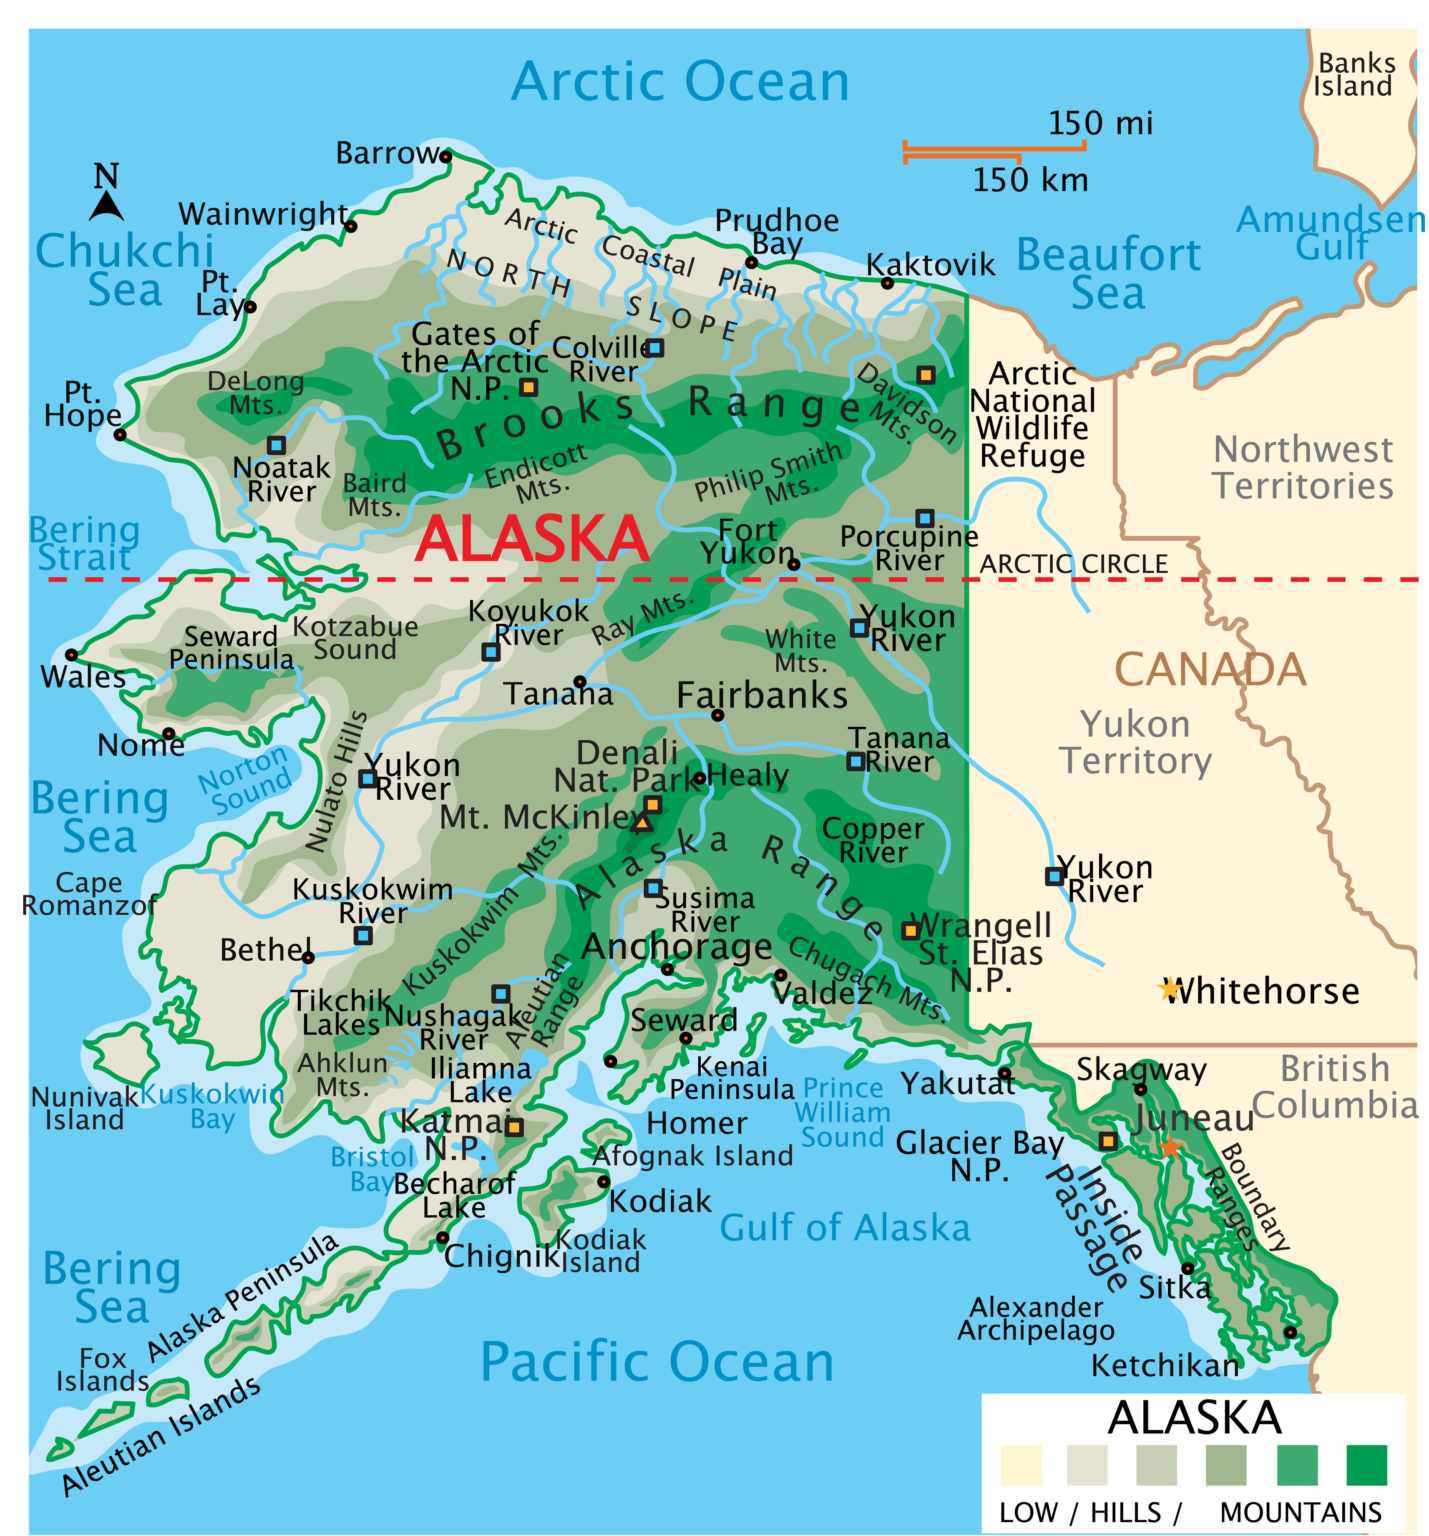 Alaska Borough Map Borough Maps With Cities 3514